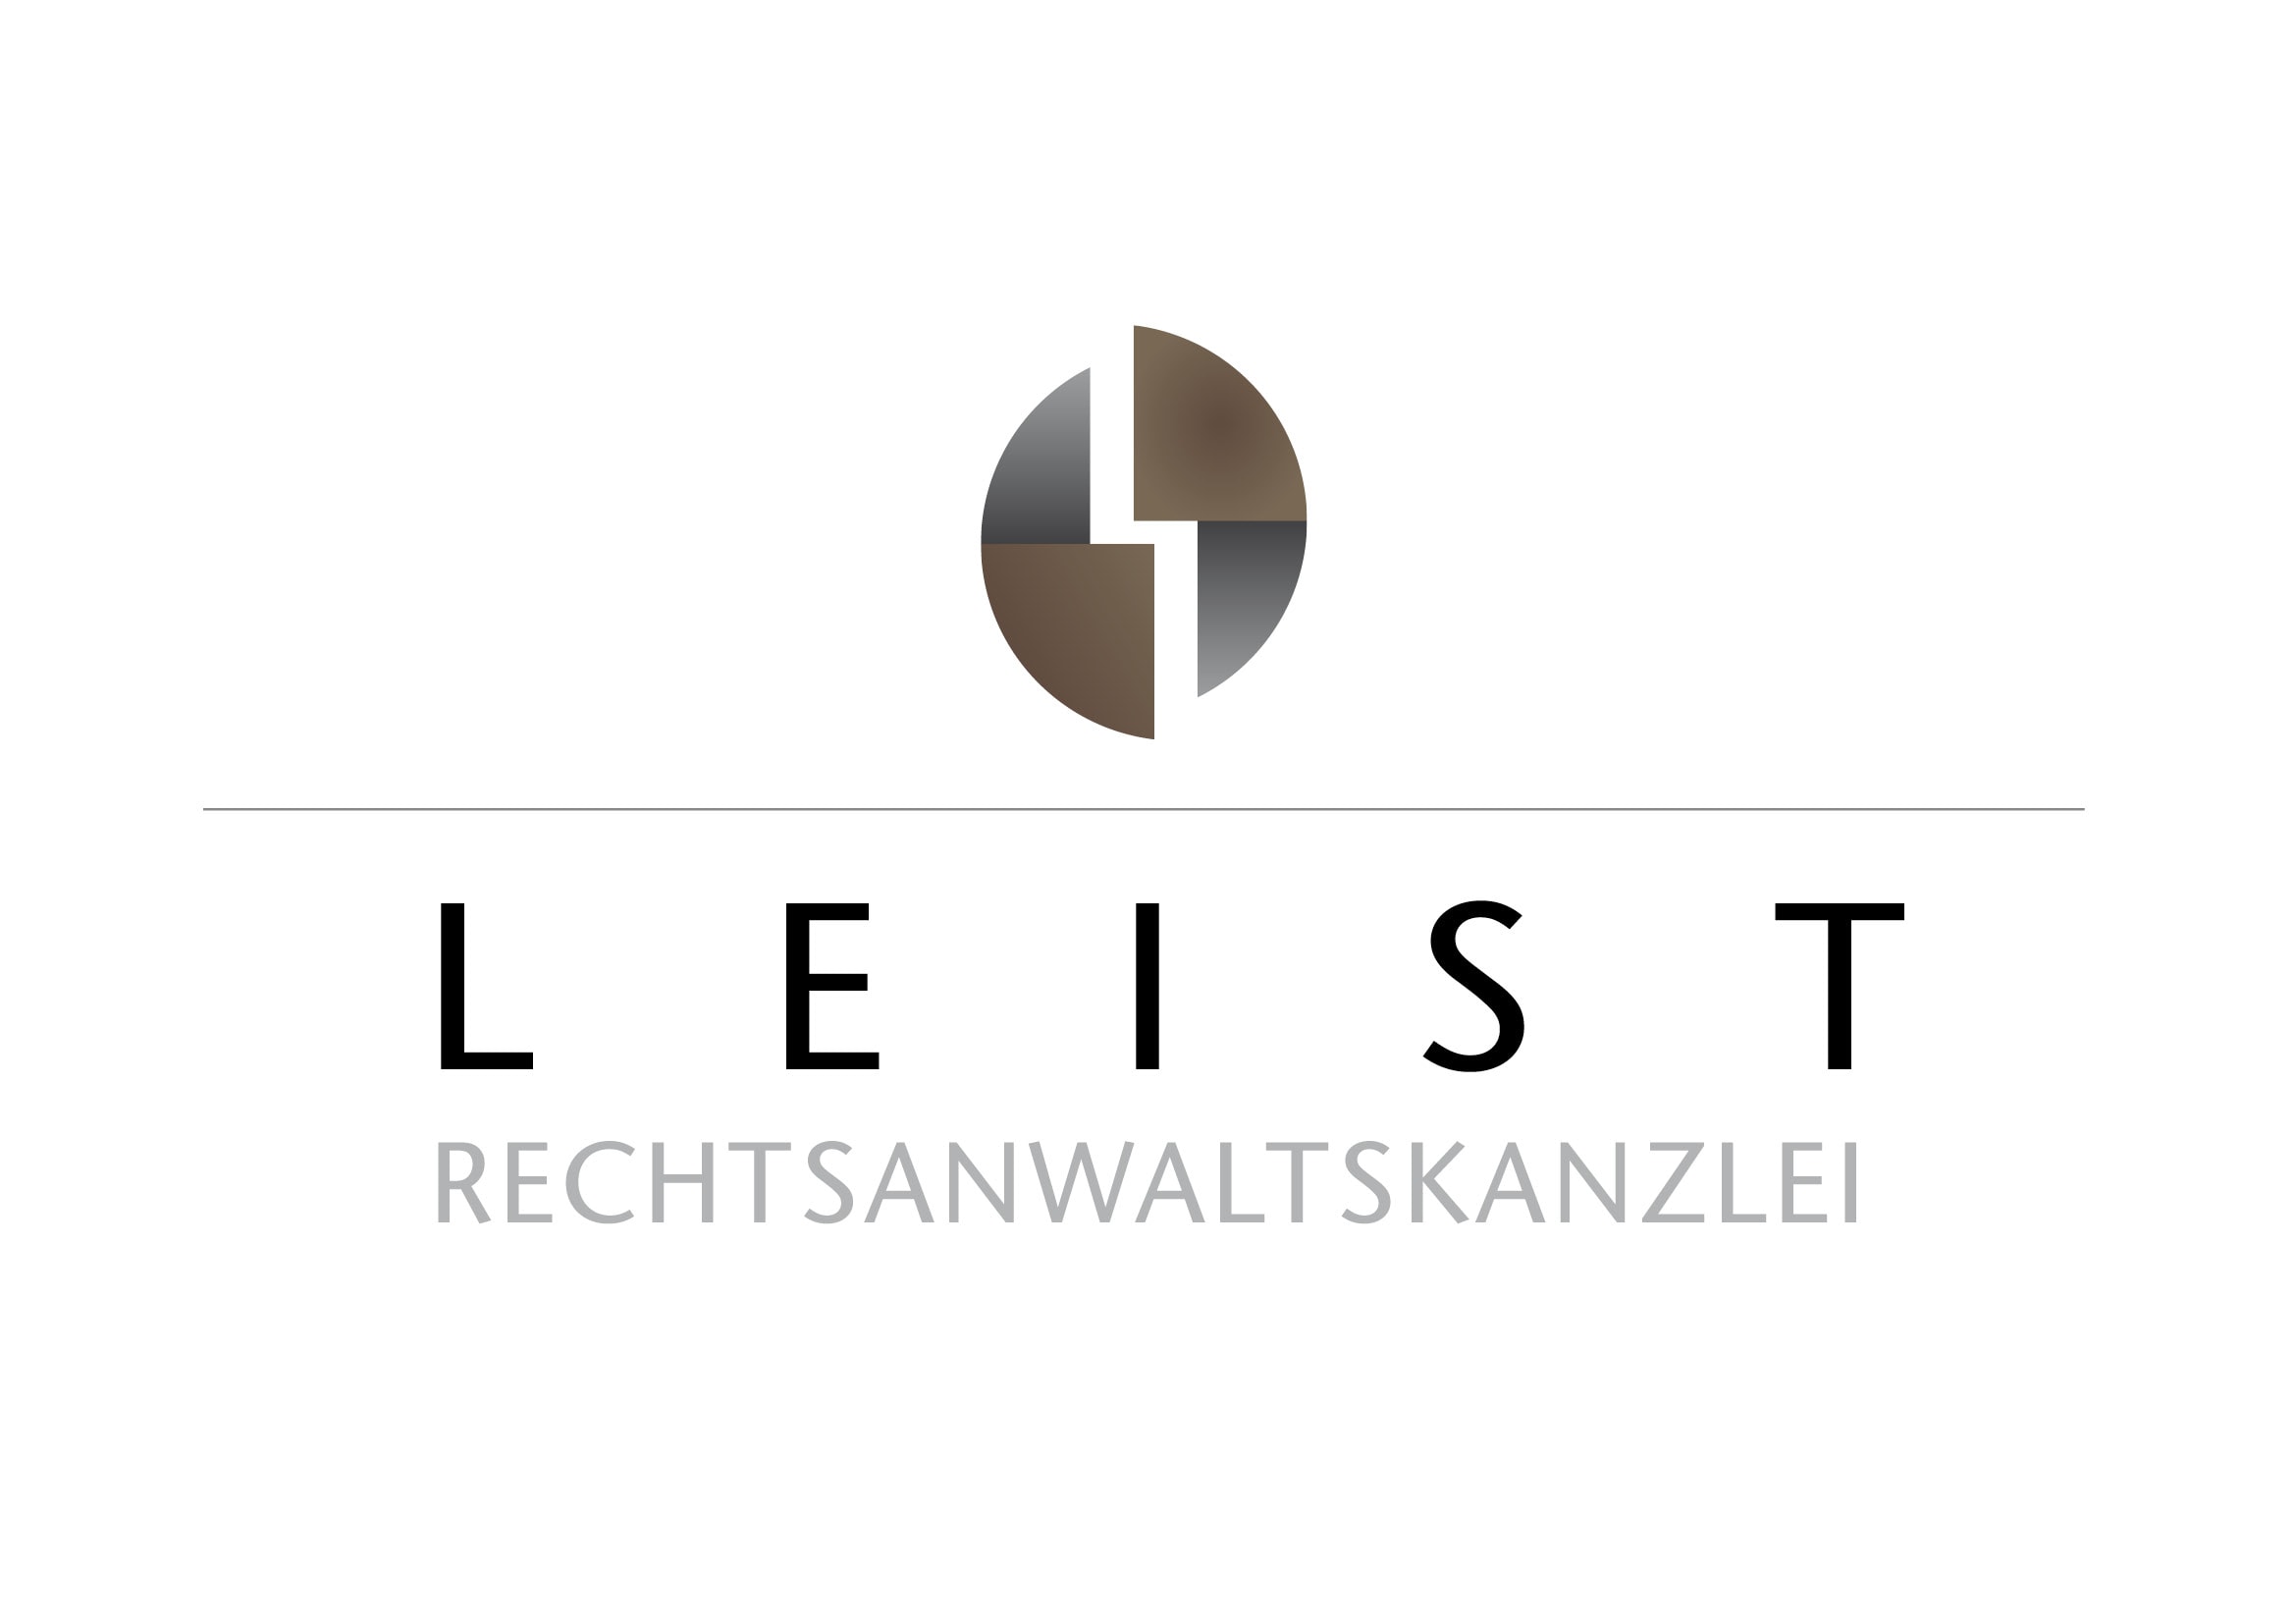 Logodesign Entwicklung für Rechtsanwaltskanzlei durch Grafik-Designer Ronald Wissler